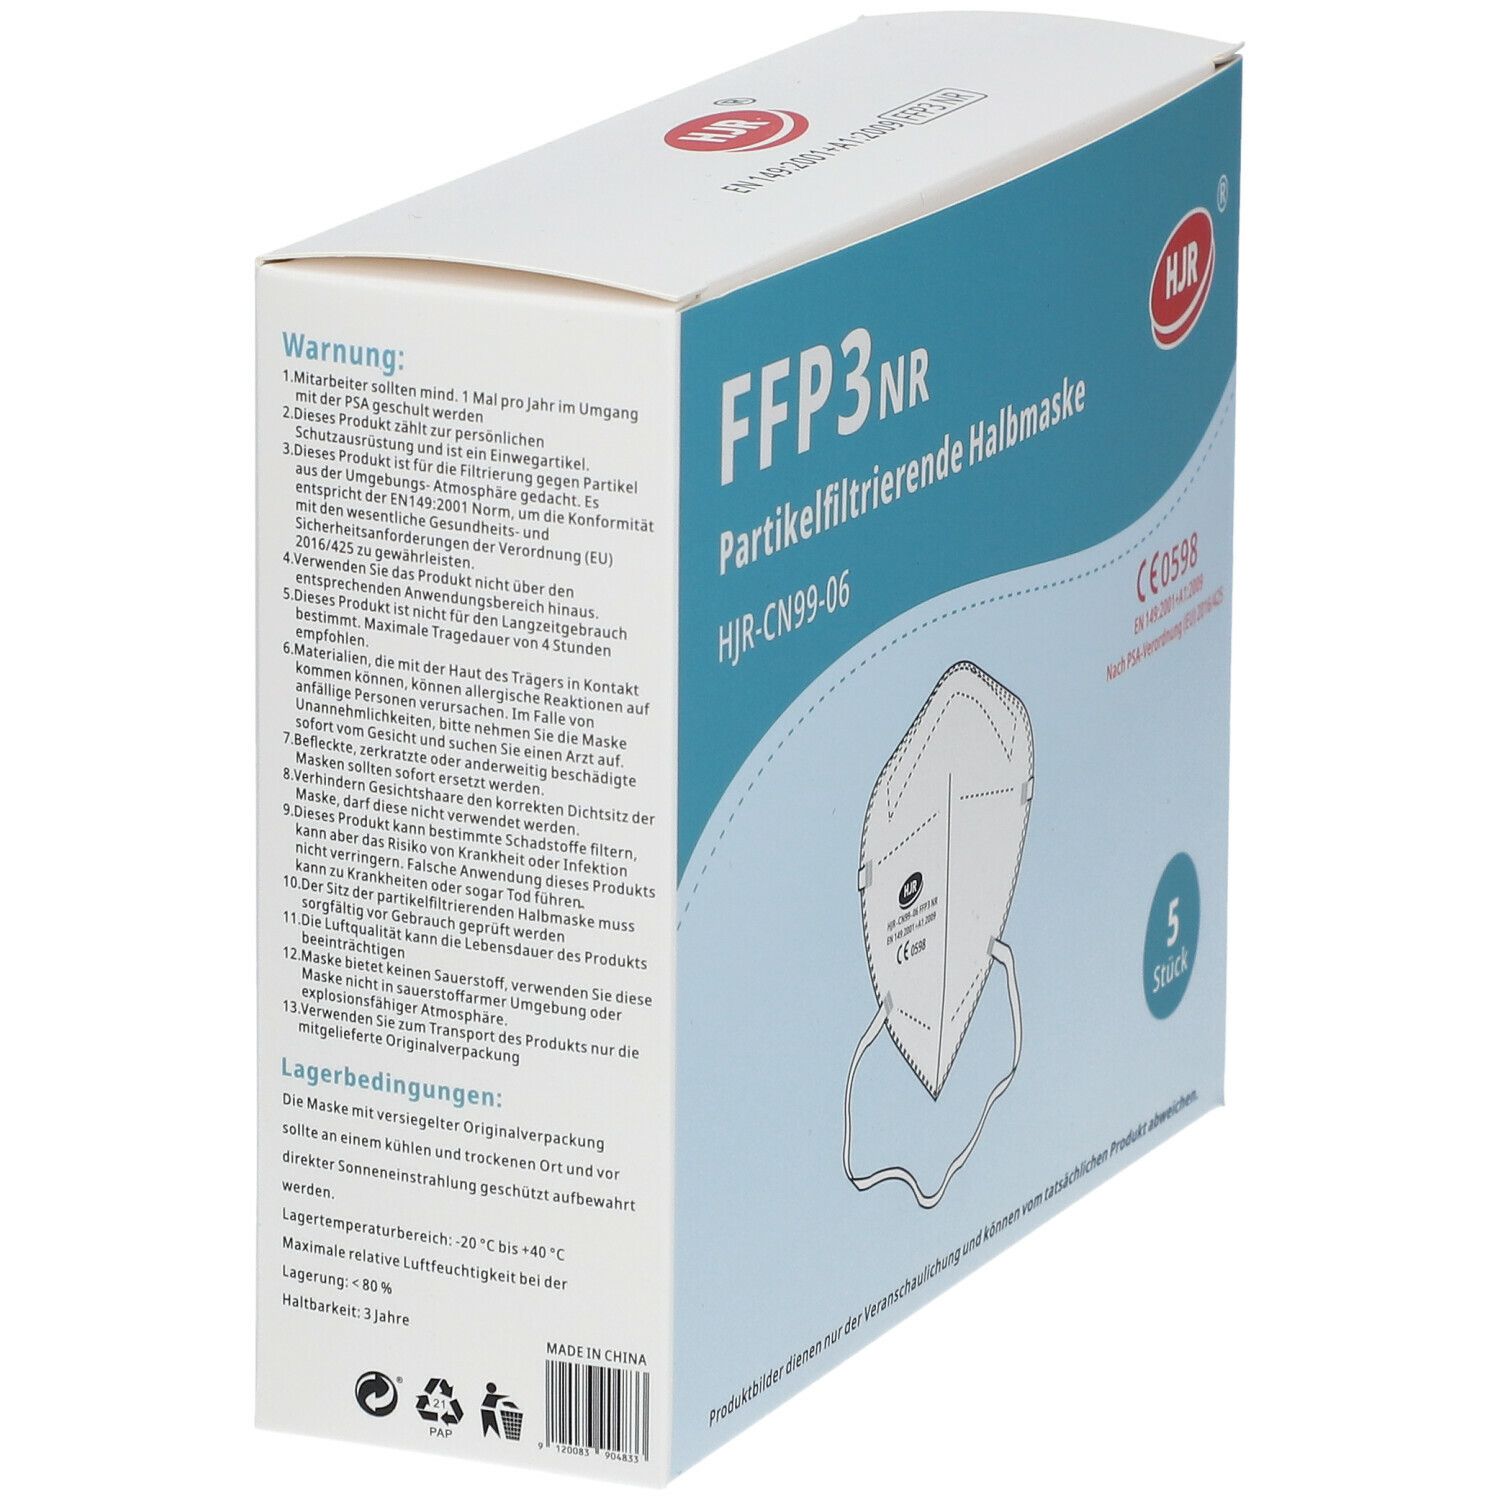 Masque filtrage de particules FFP3